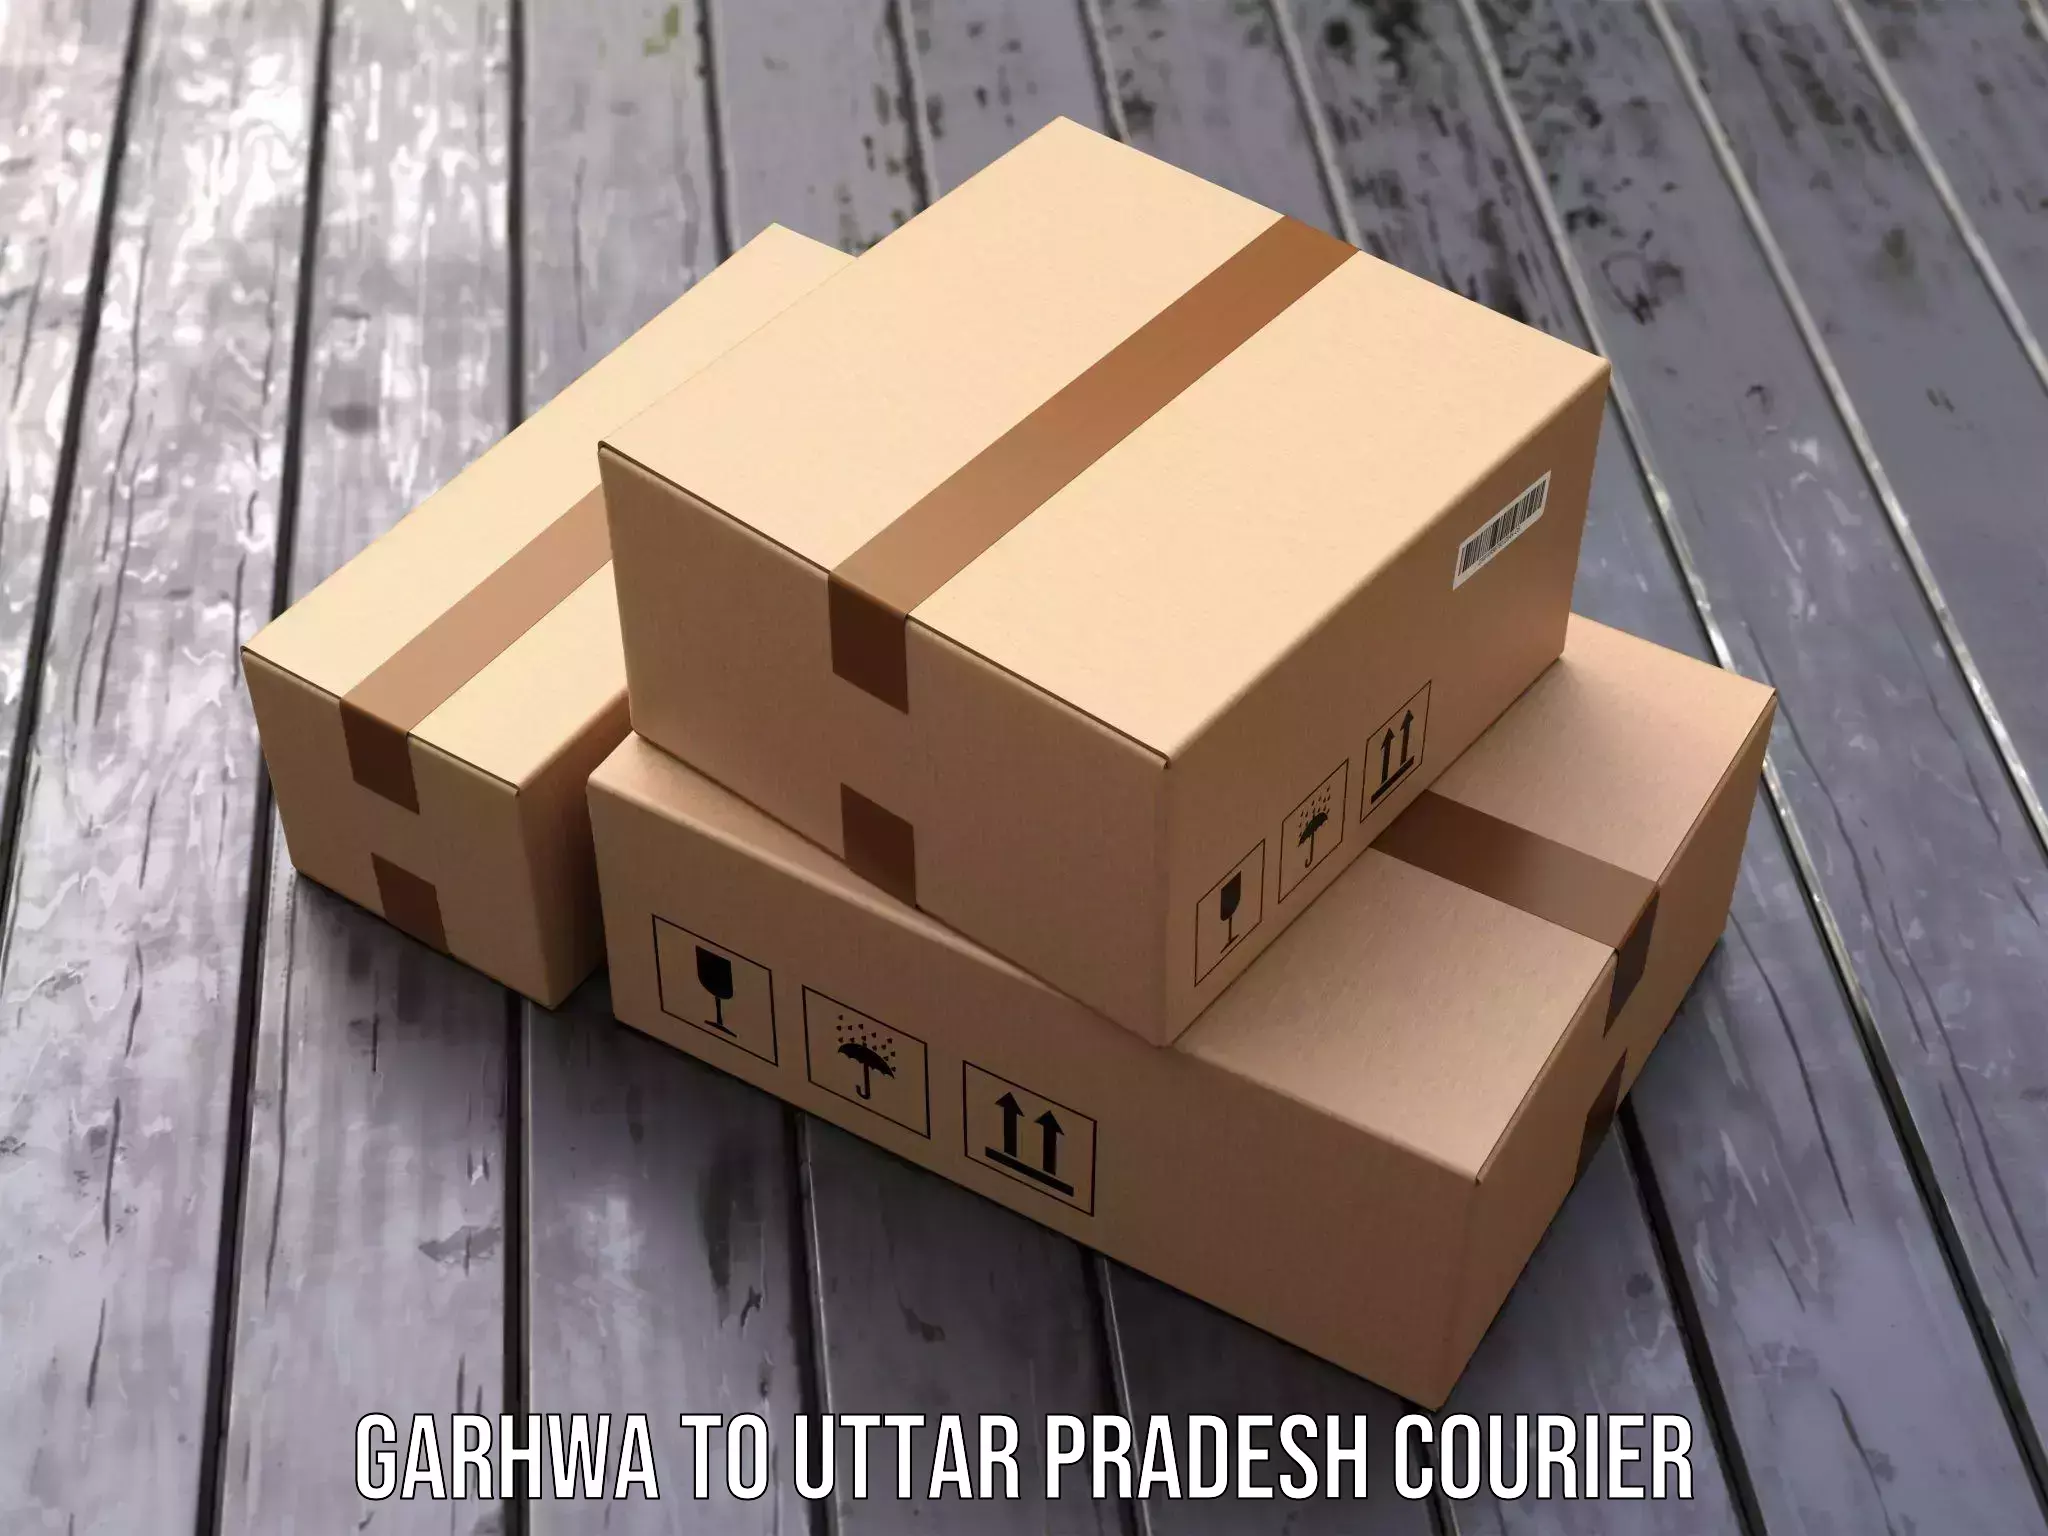 Courier service comparison in Garhwa to Jewar